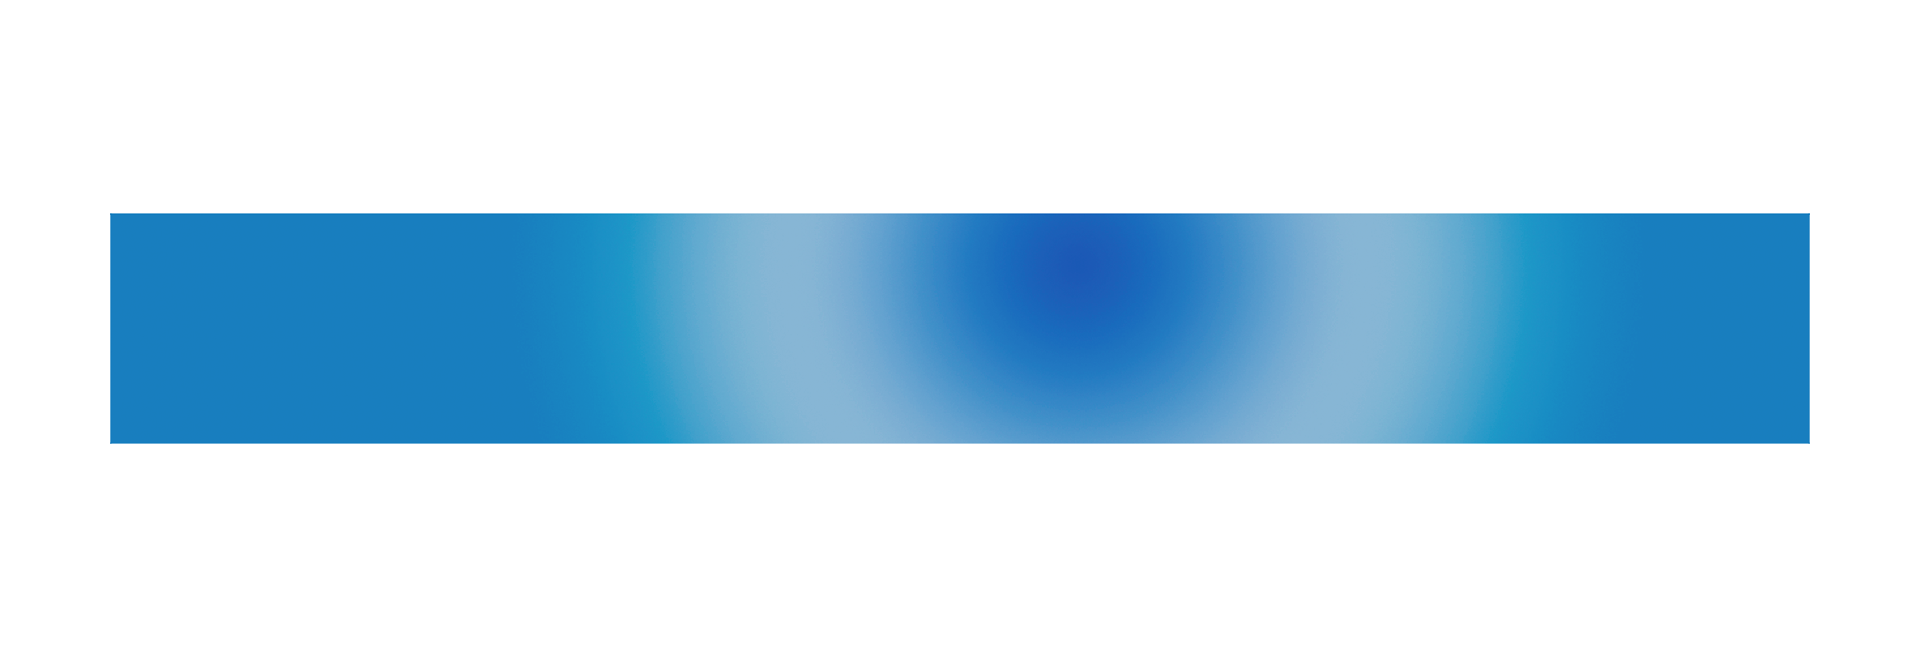 Línea azul PNG imagen de alta calidad